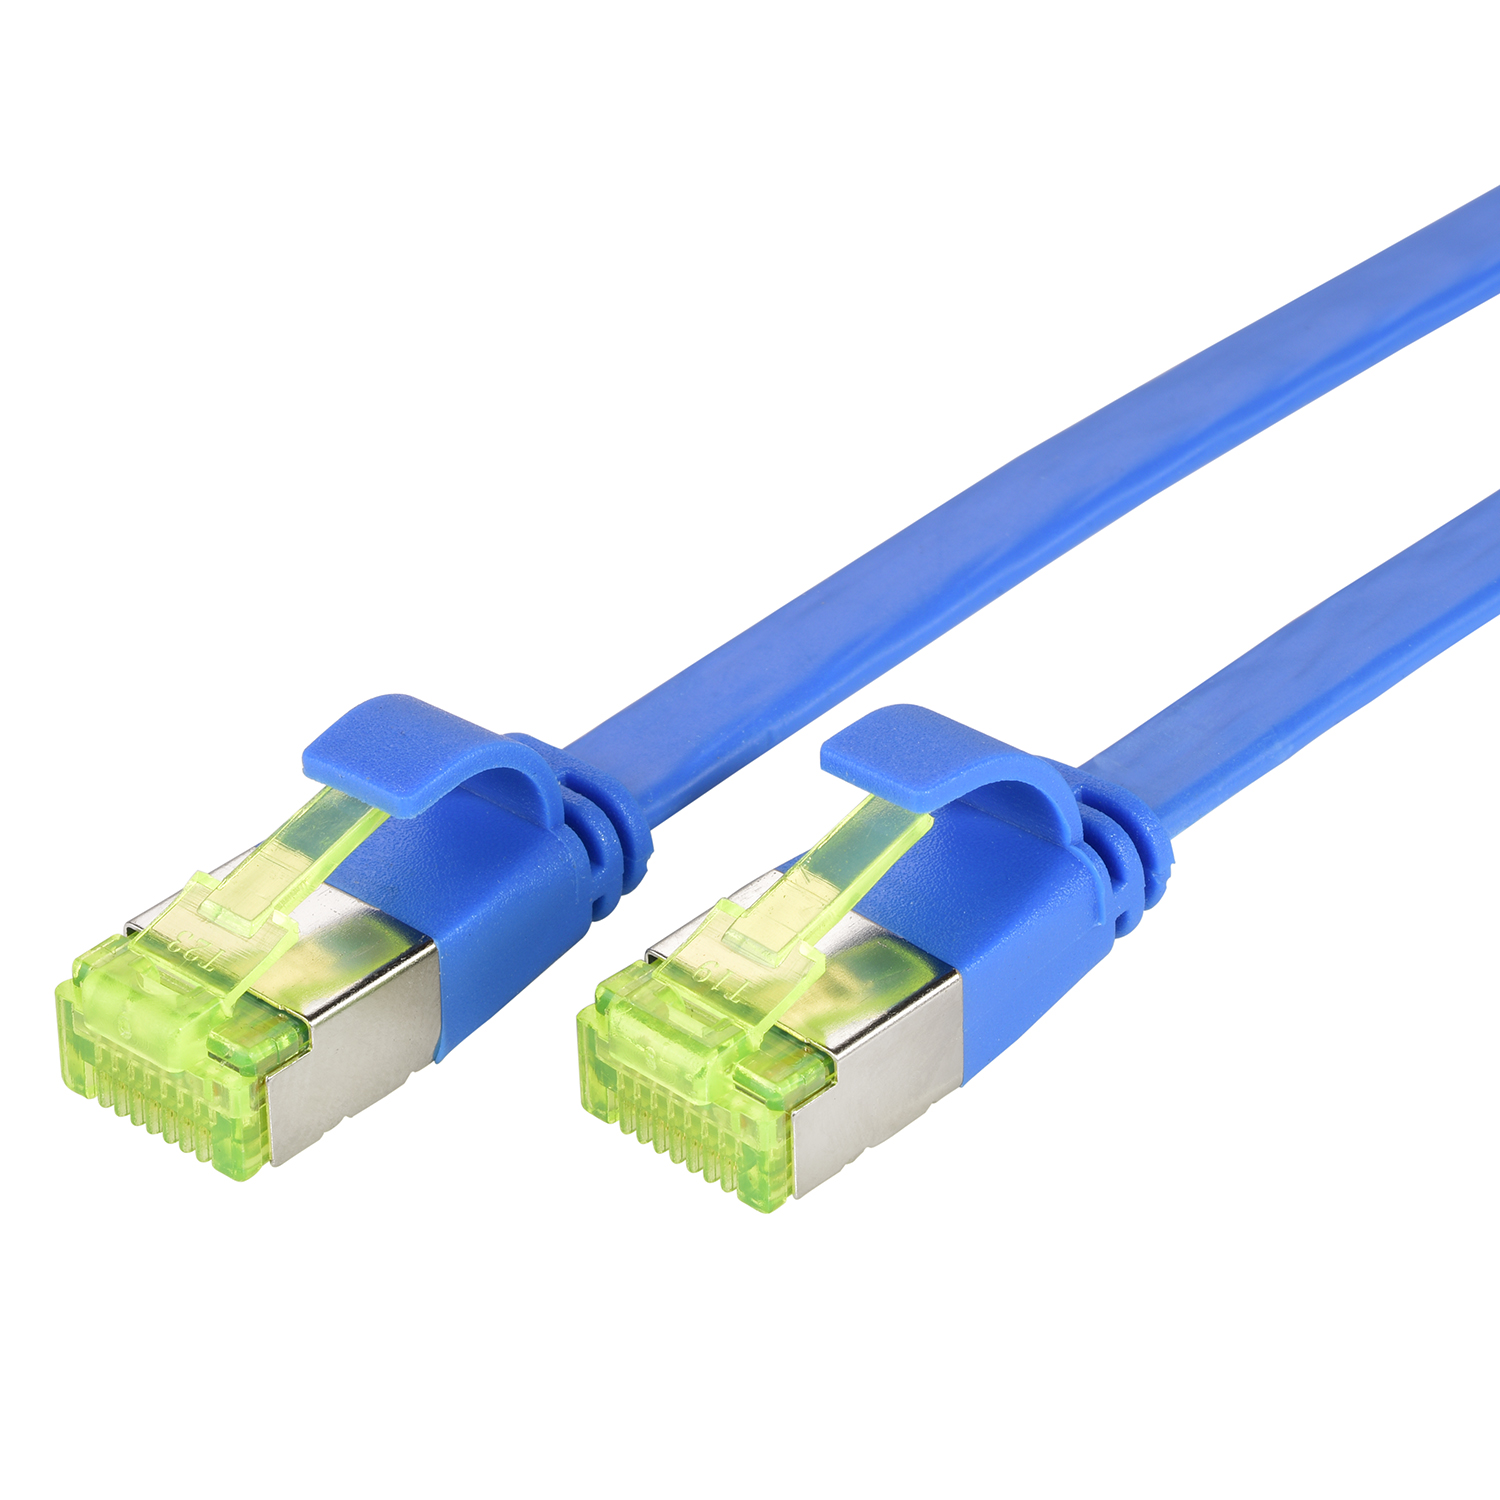 TPFNET 5er Pack 2m U/FTP Netzwerkkabel, m Flachkabel 2 / Patchkabel GBit, blau, 10